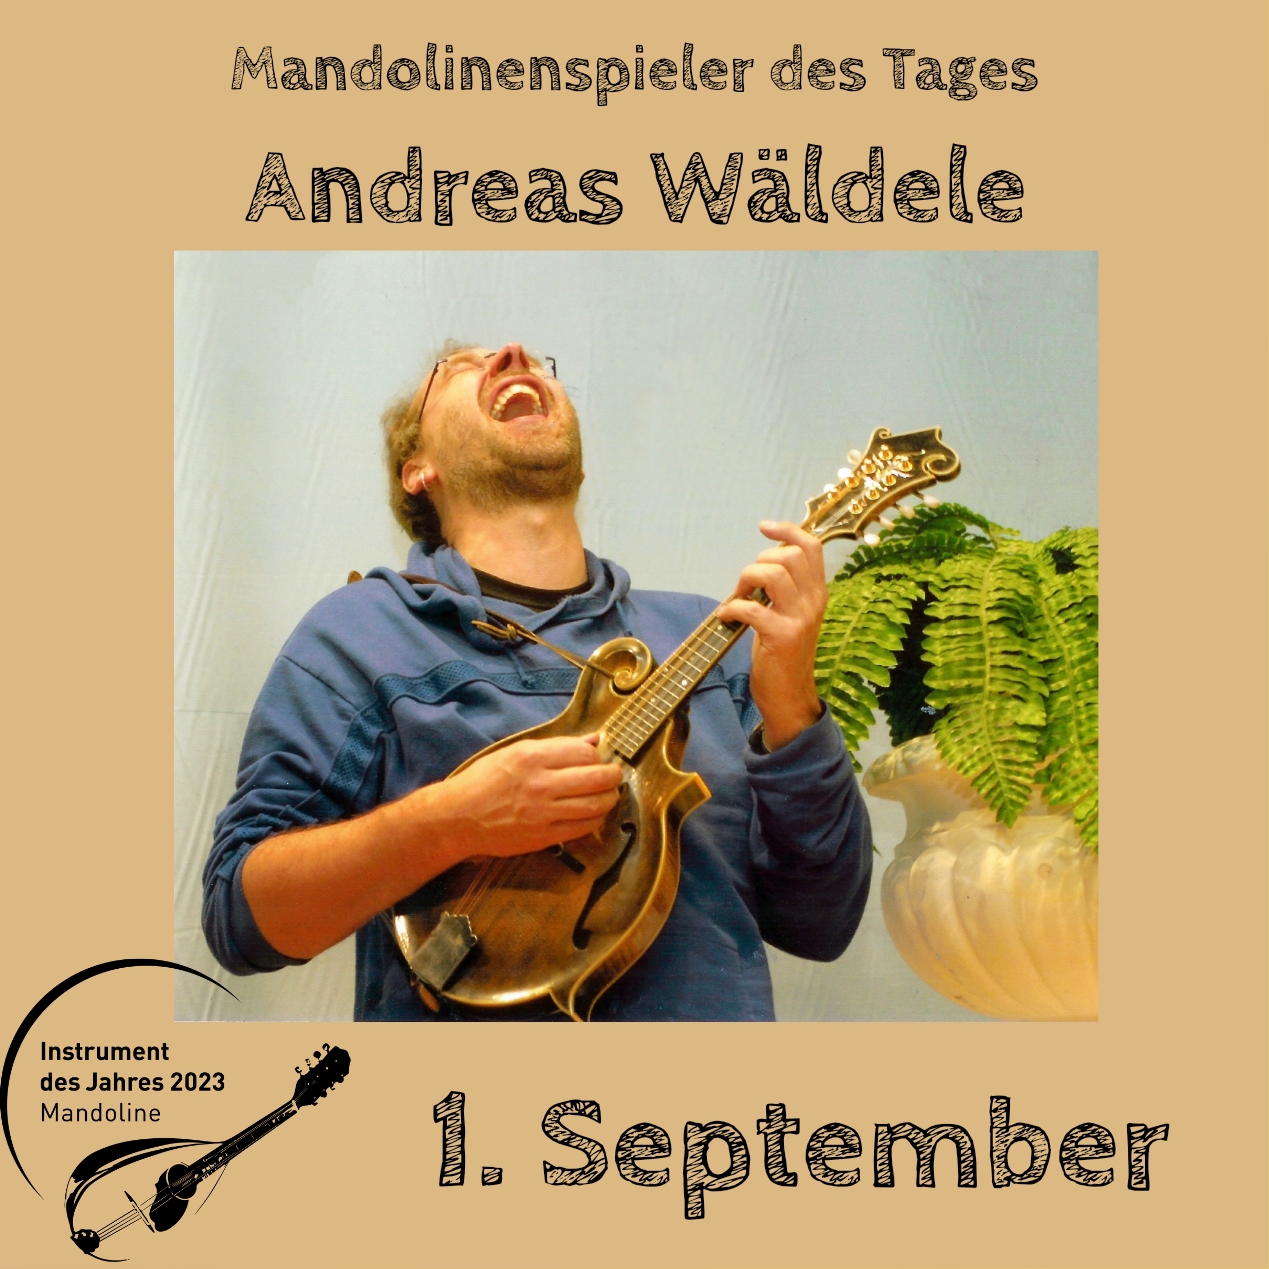 1. September - Andreas Wäldele Mandoline Instrument des Jahres 2023 Mandolinenspieler Mandolinenspielerin des Tages